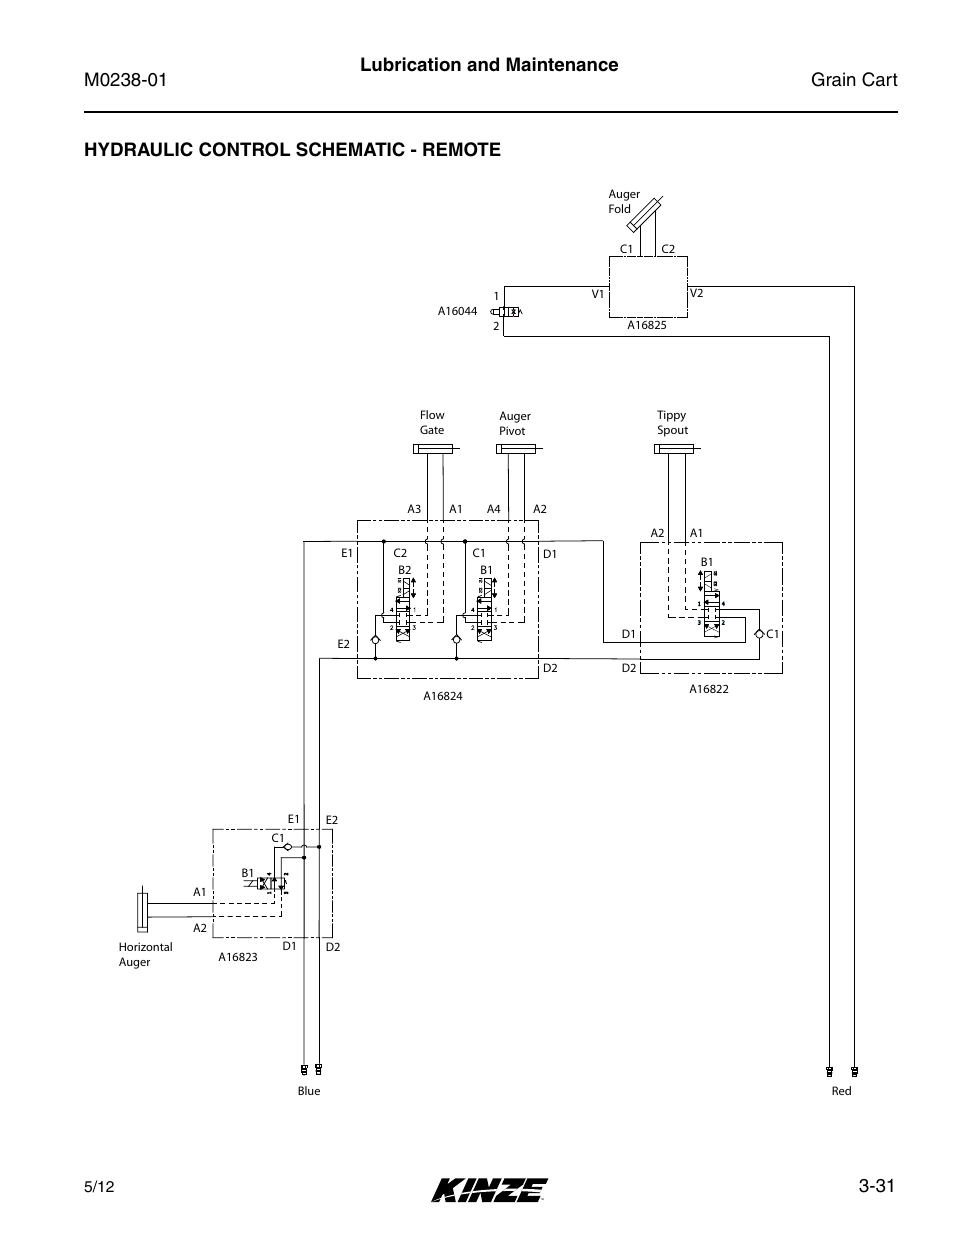 Hydraulic control schematic - remote, Hydraulic control schematic - remote -31 | Kinze Grain Carts Rev. 7/14 User Manual | Page 67 / 70